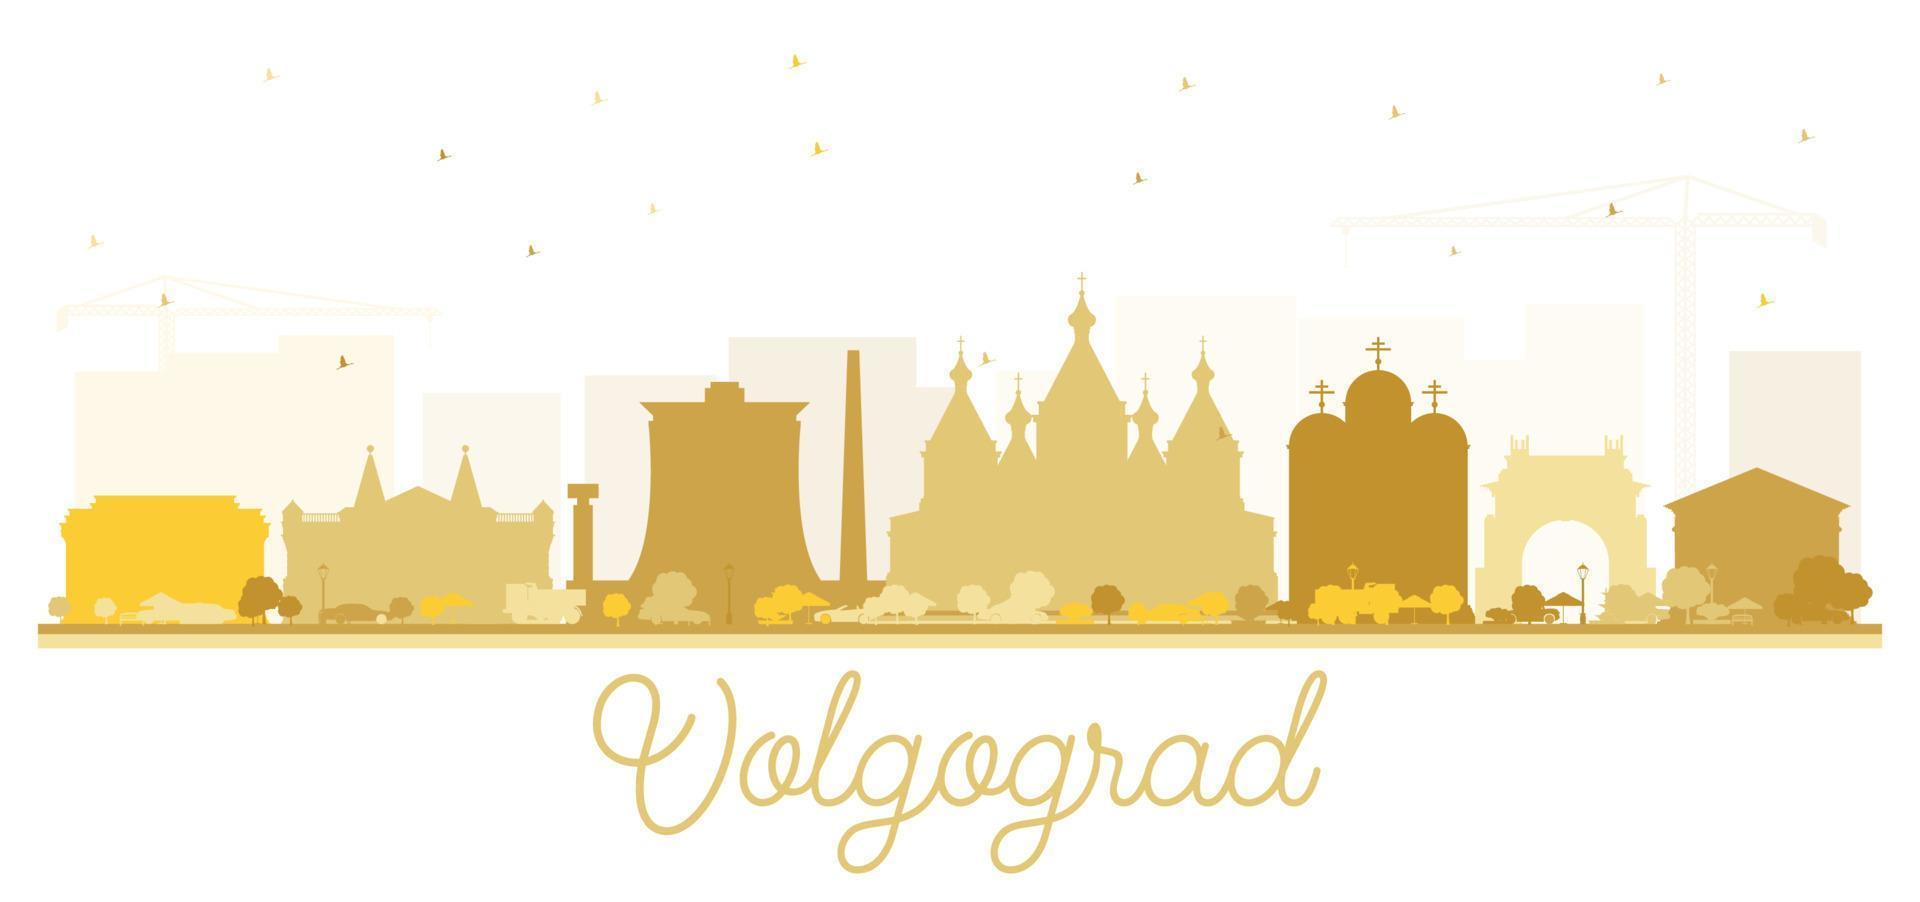 silueta del horizonte de la ciudad de volgogrado rusia con edificios dorados aislados en blanco. vector